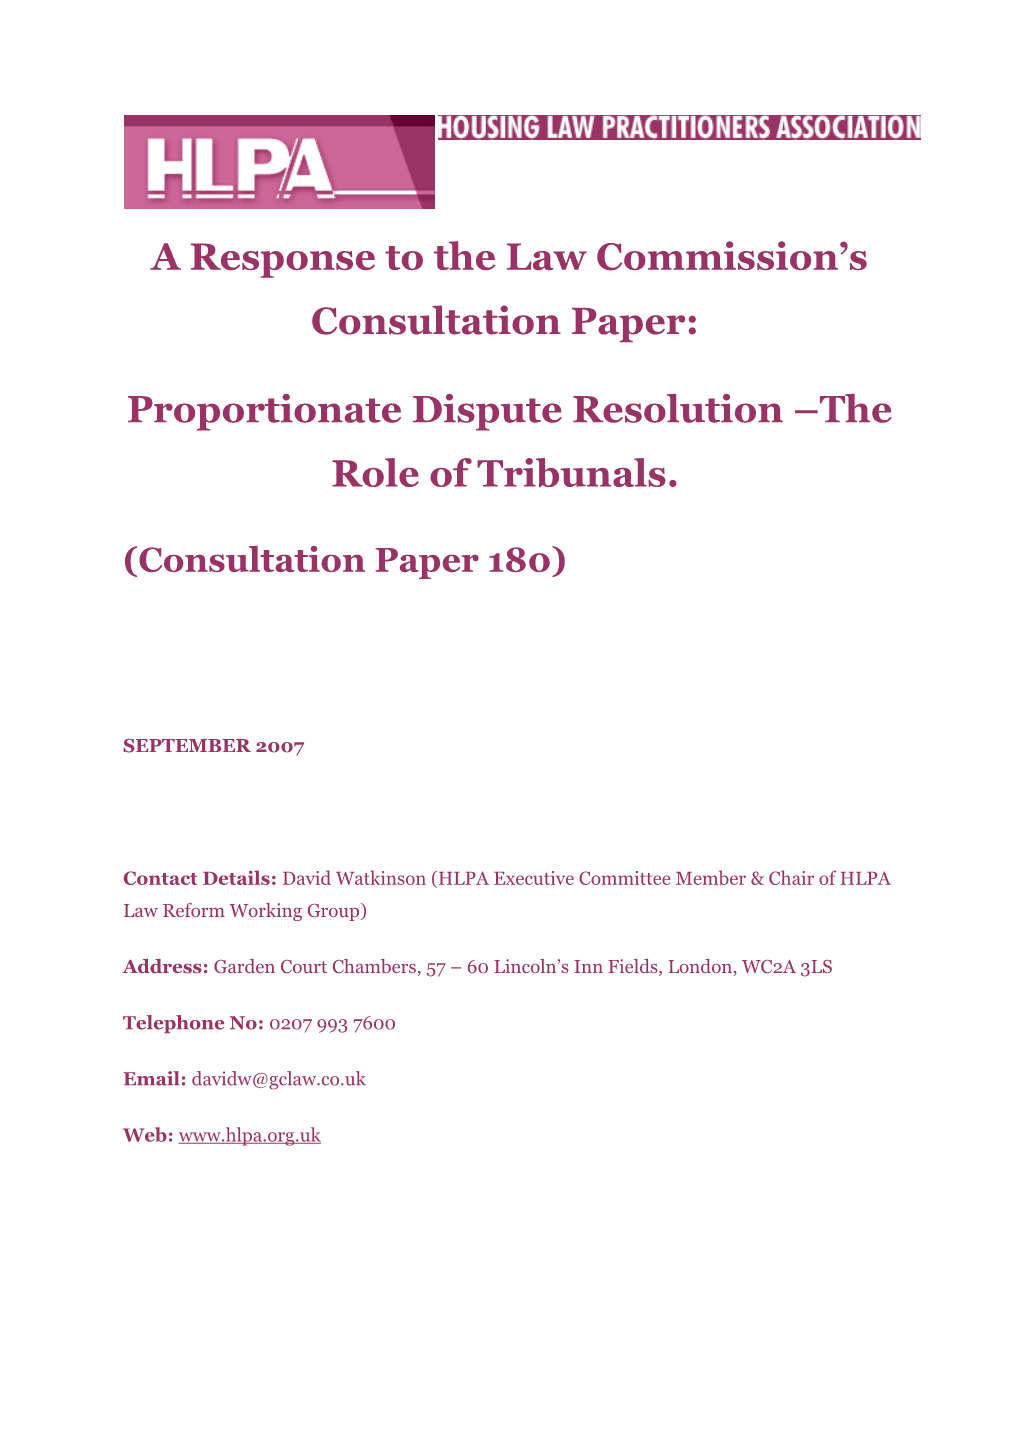 Consultation Paper 180